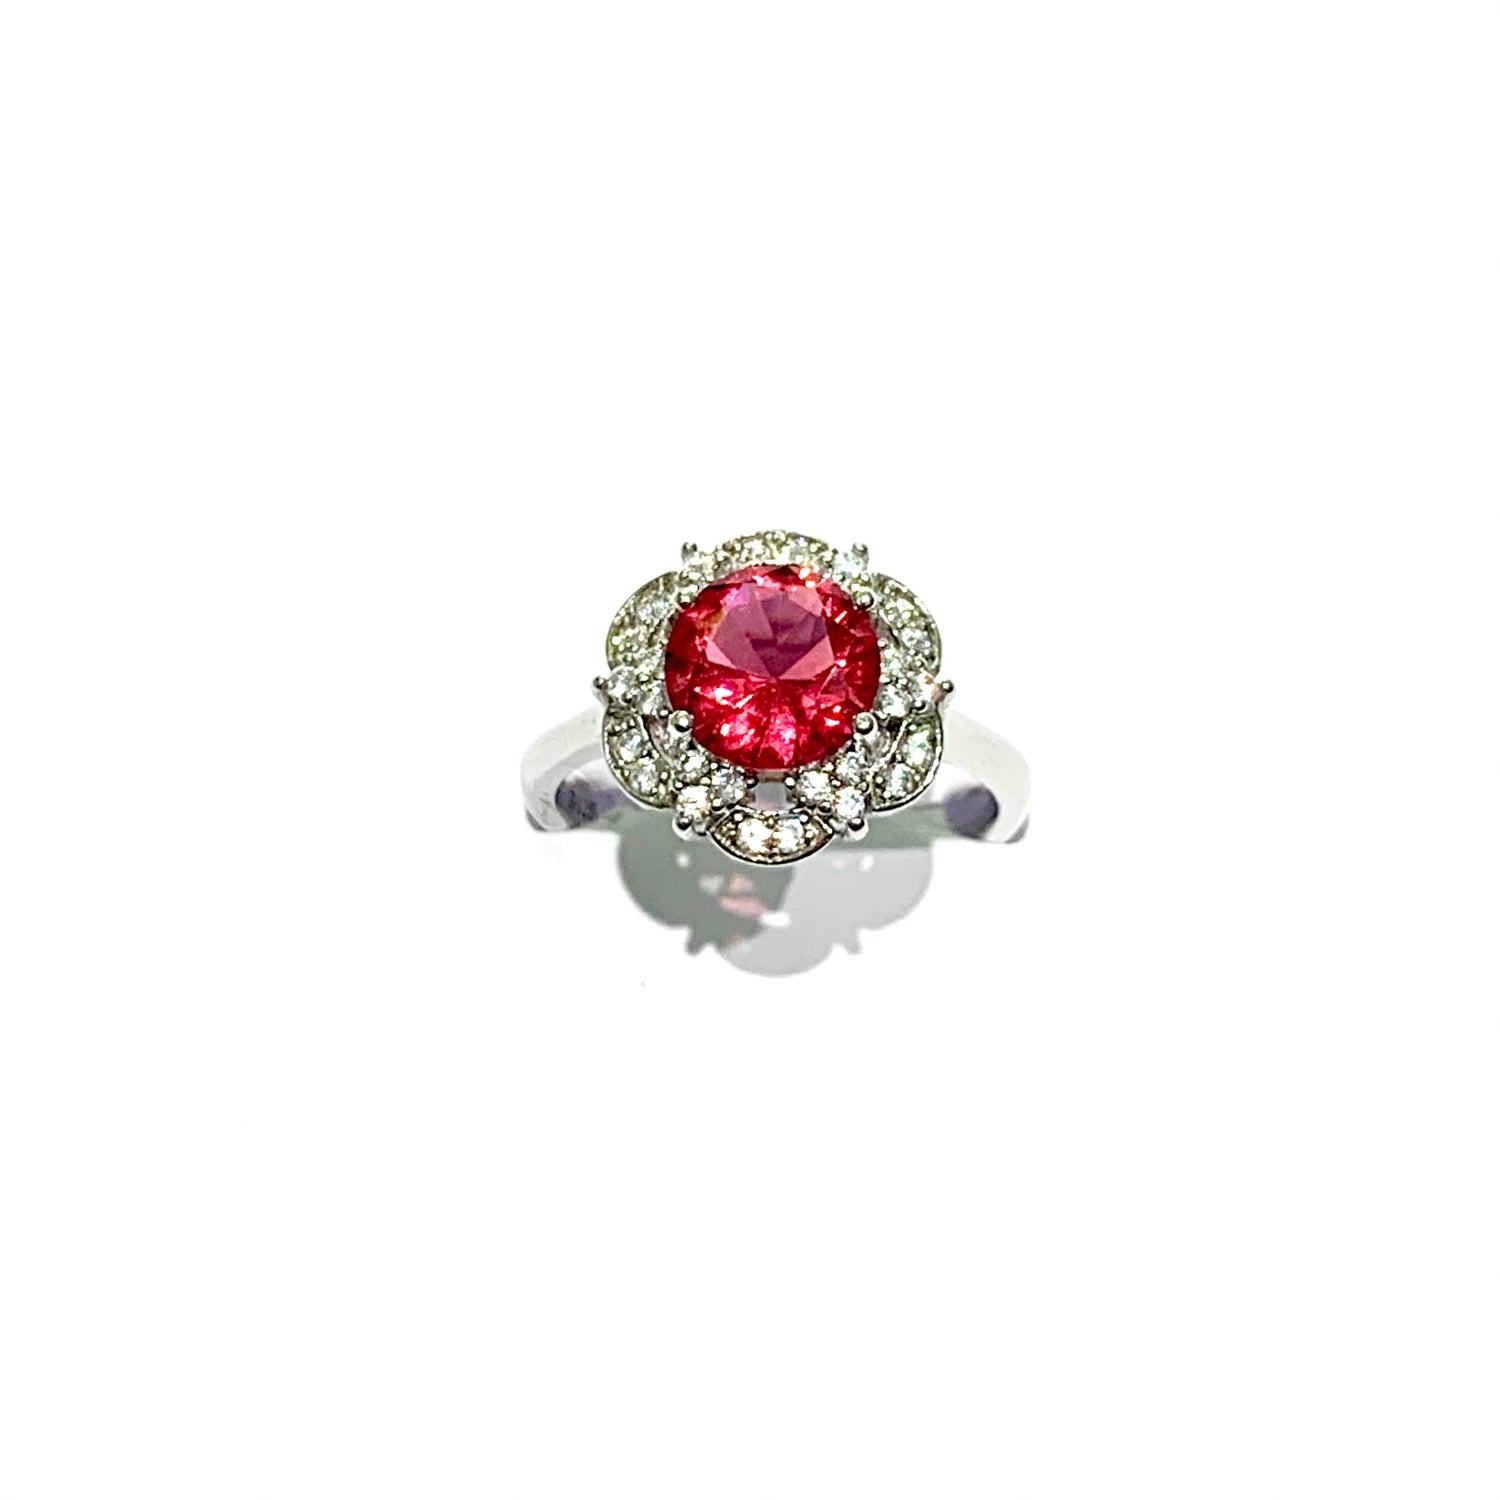 Anello in argento con zircone tondo colore rubino circondato da corolle ricoperte da piccoli zirconi bianchi.  Dimensione 1,2 cm.  Misura 15.